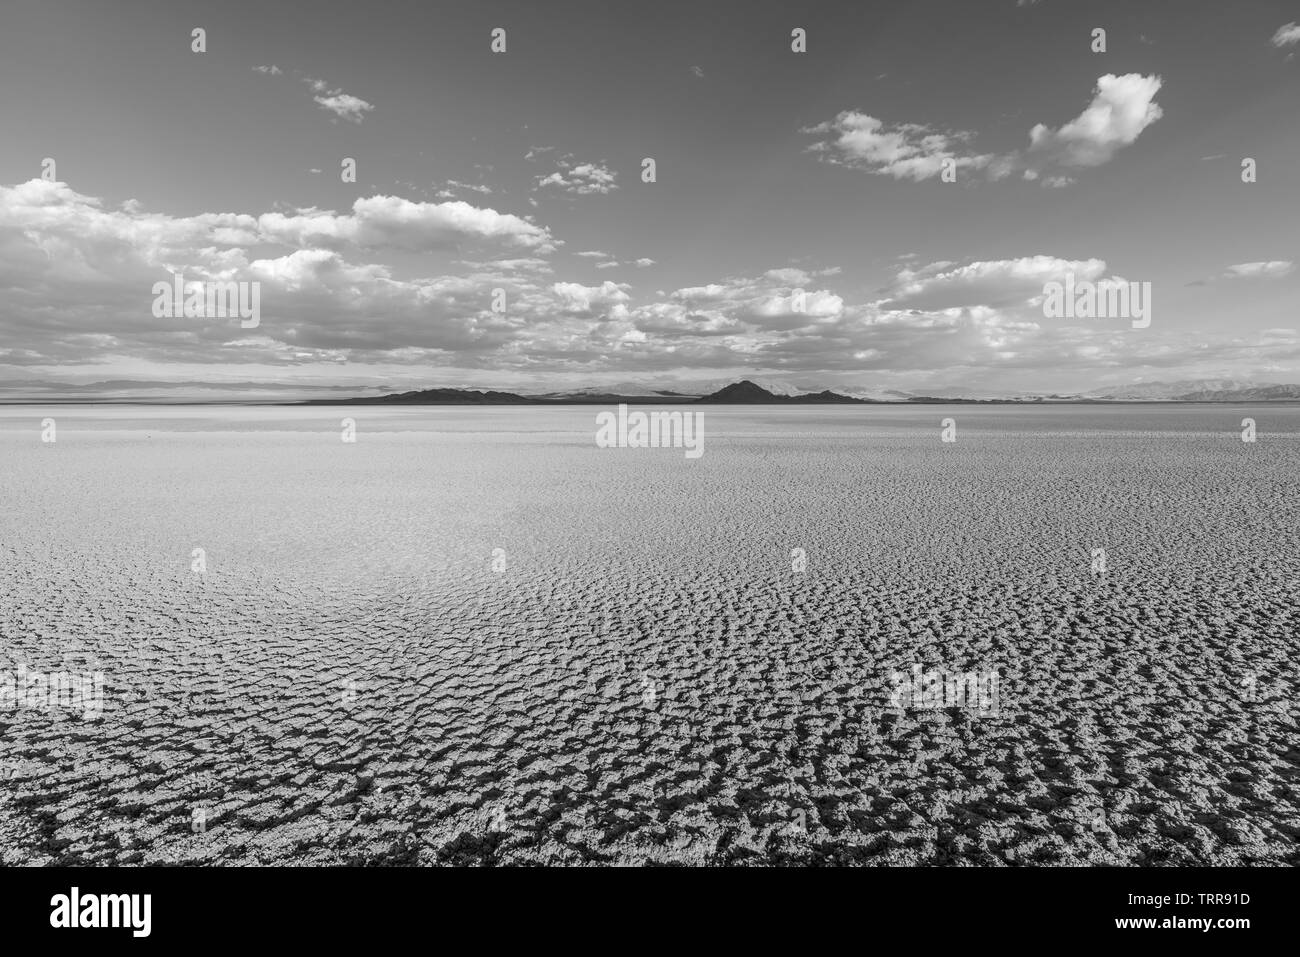 Vue en noir et blanc de soda dry lake, dans le désert de Mojave, près de Baker, en Californie. Banque D'Images